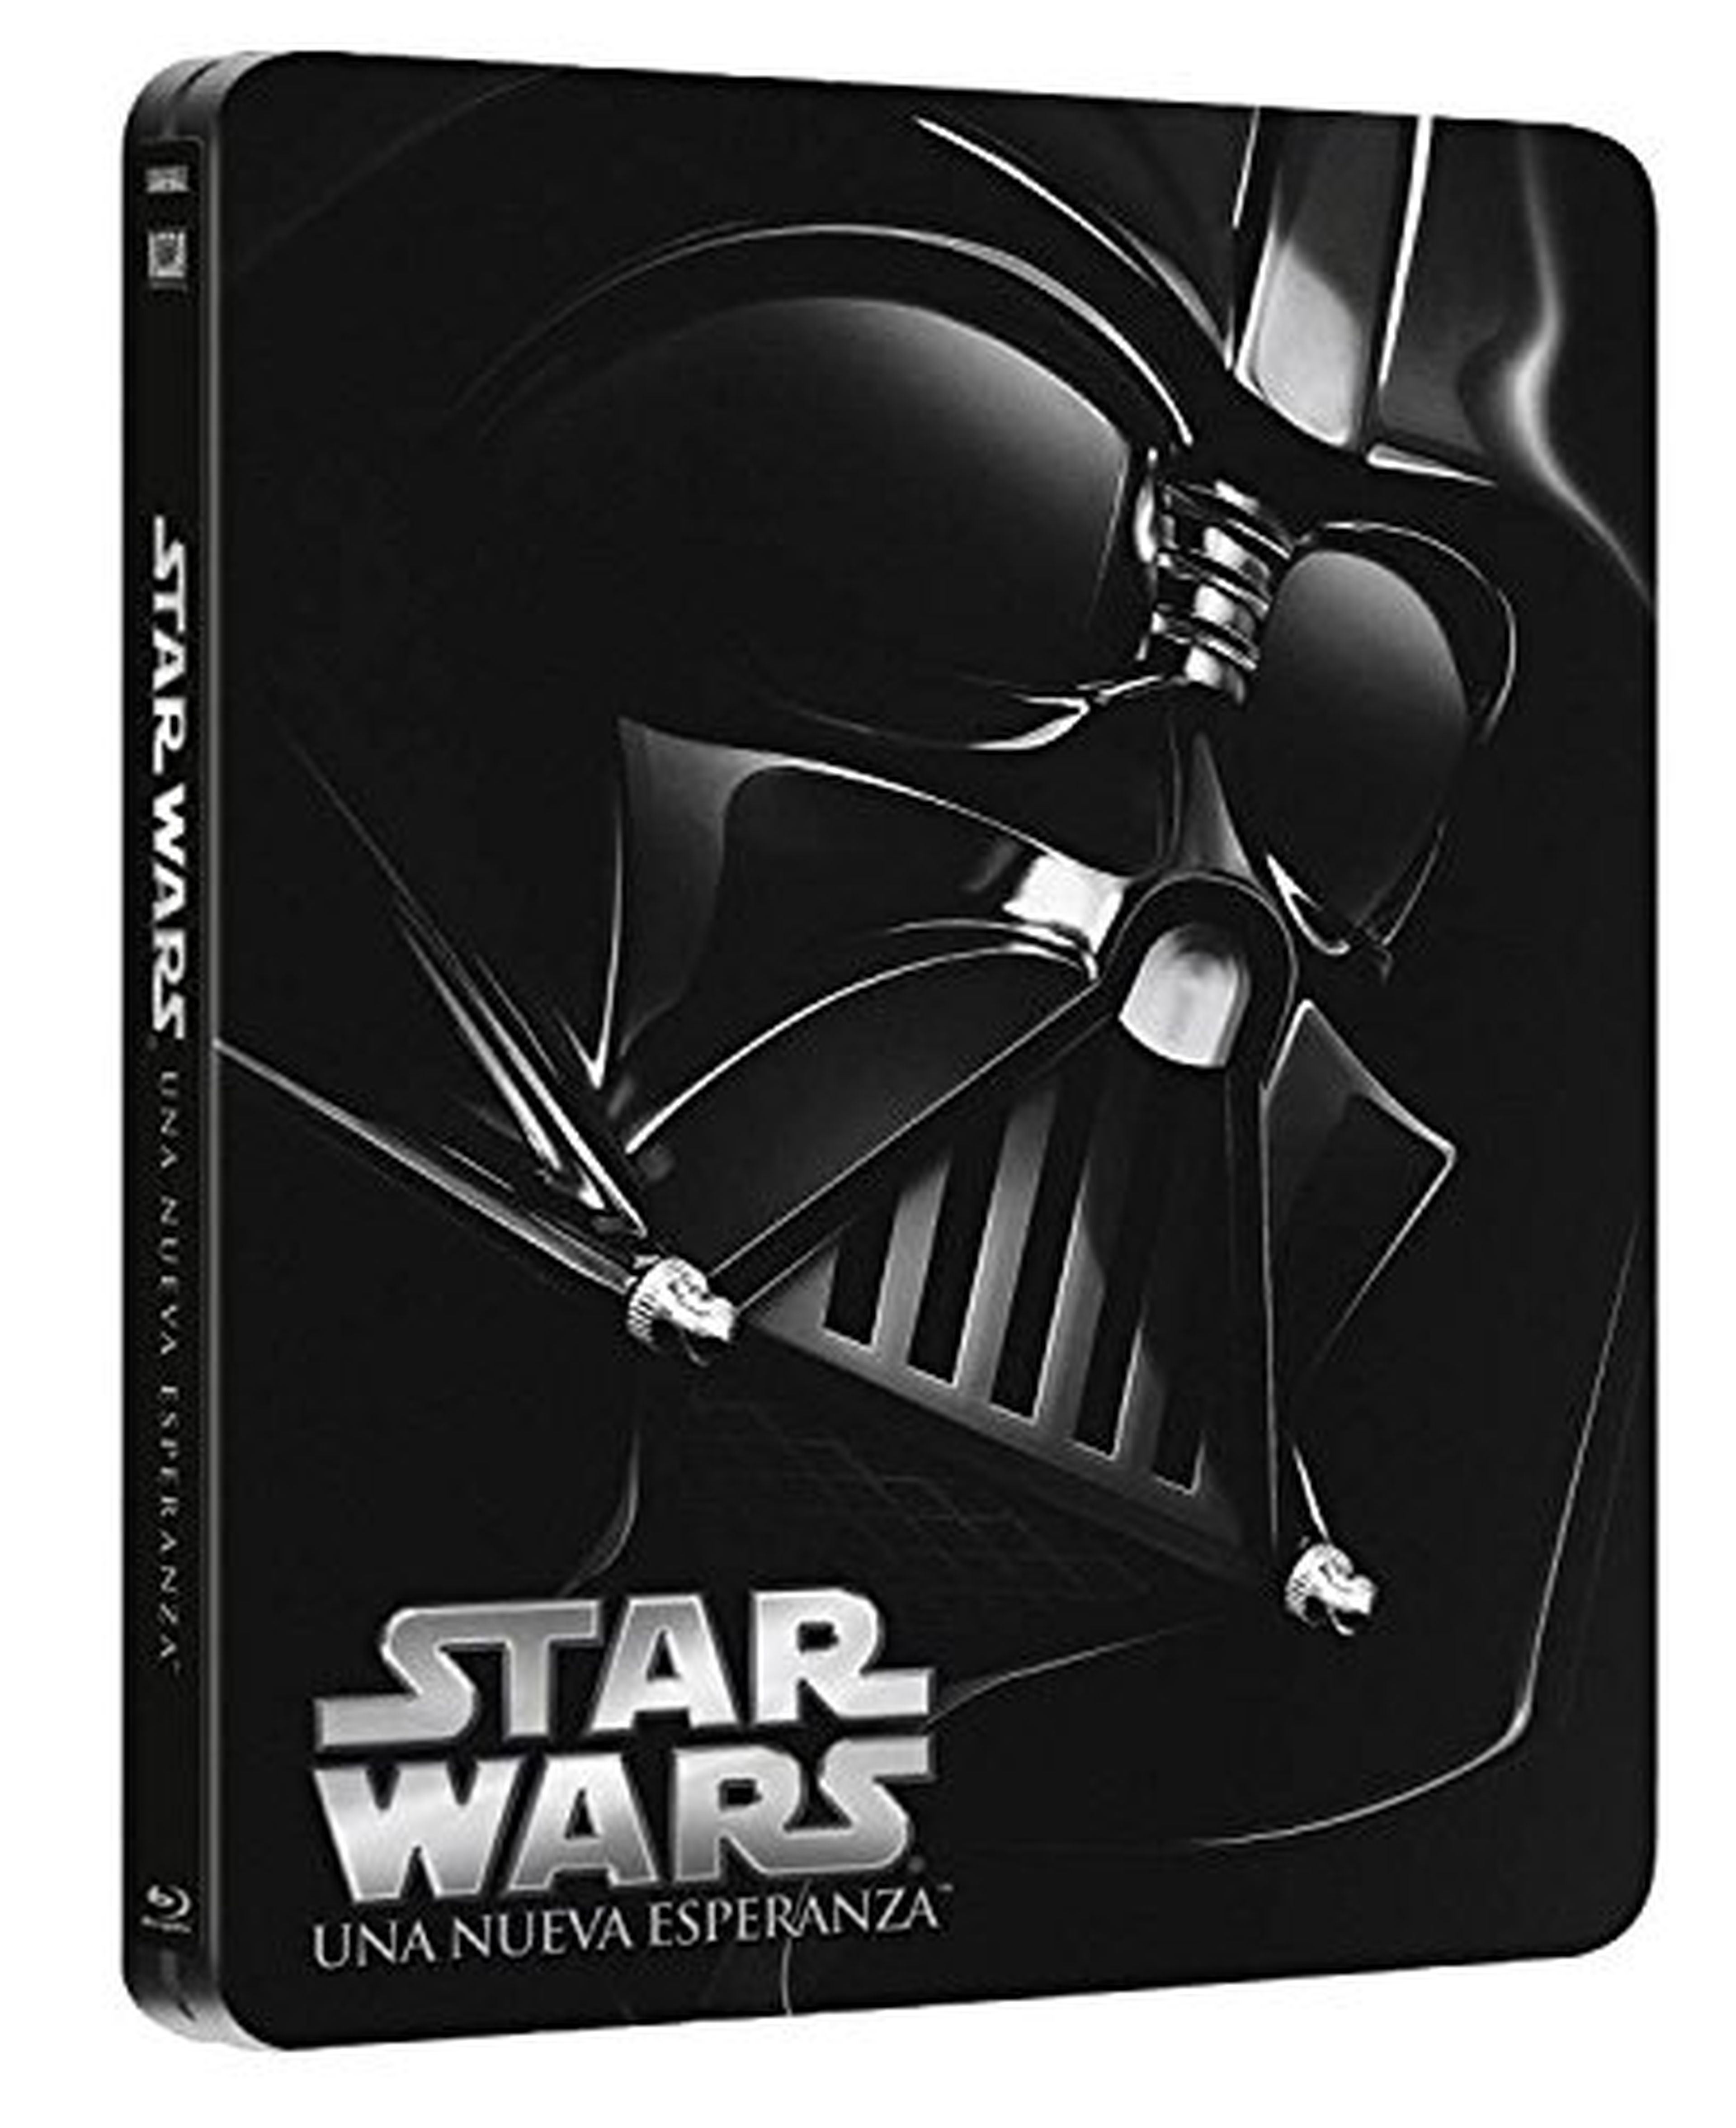 Star Wars: El Retorno del Jedi - Edición Metálica Blu-ray